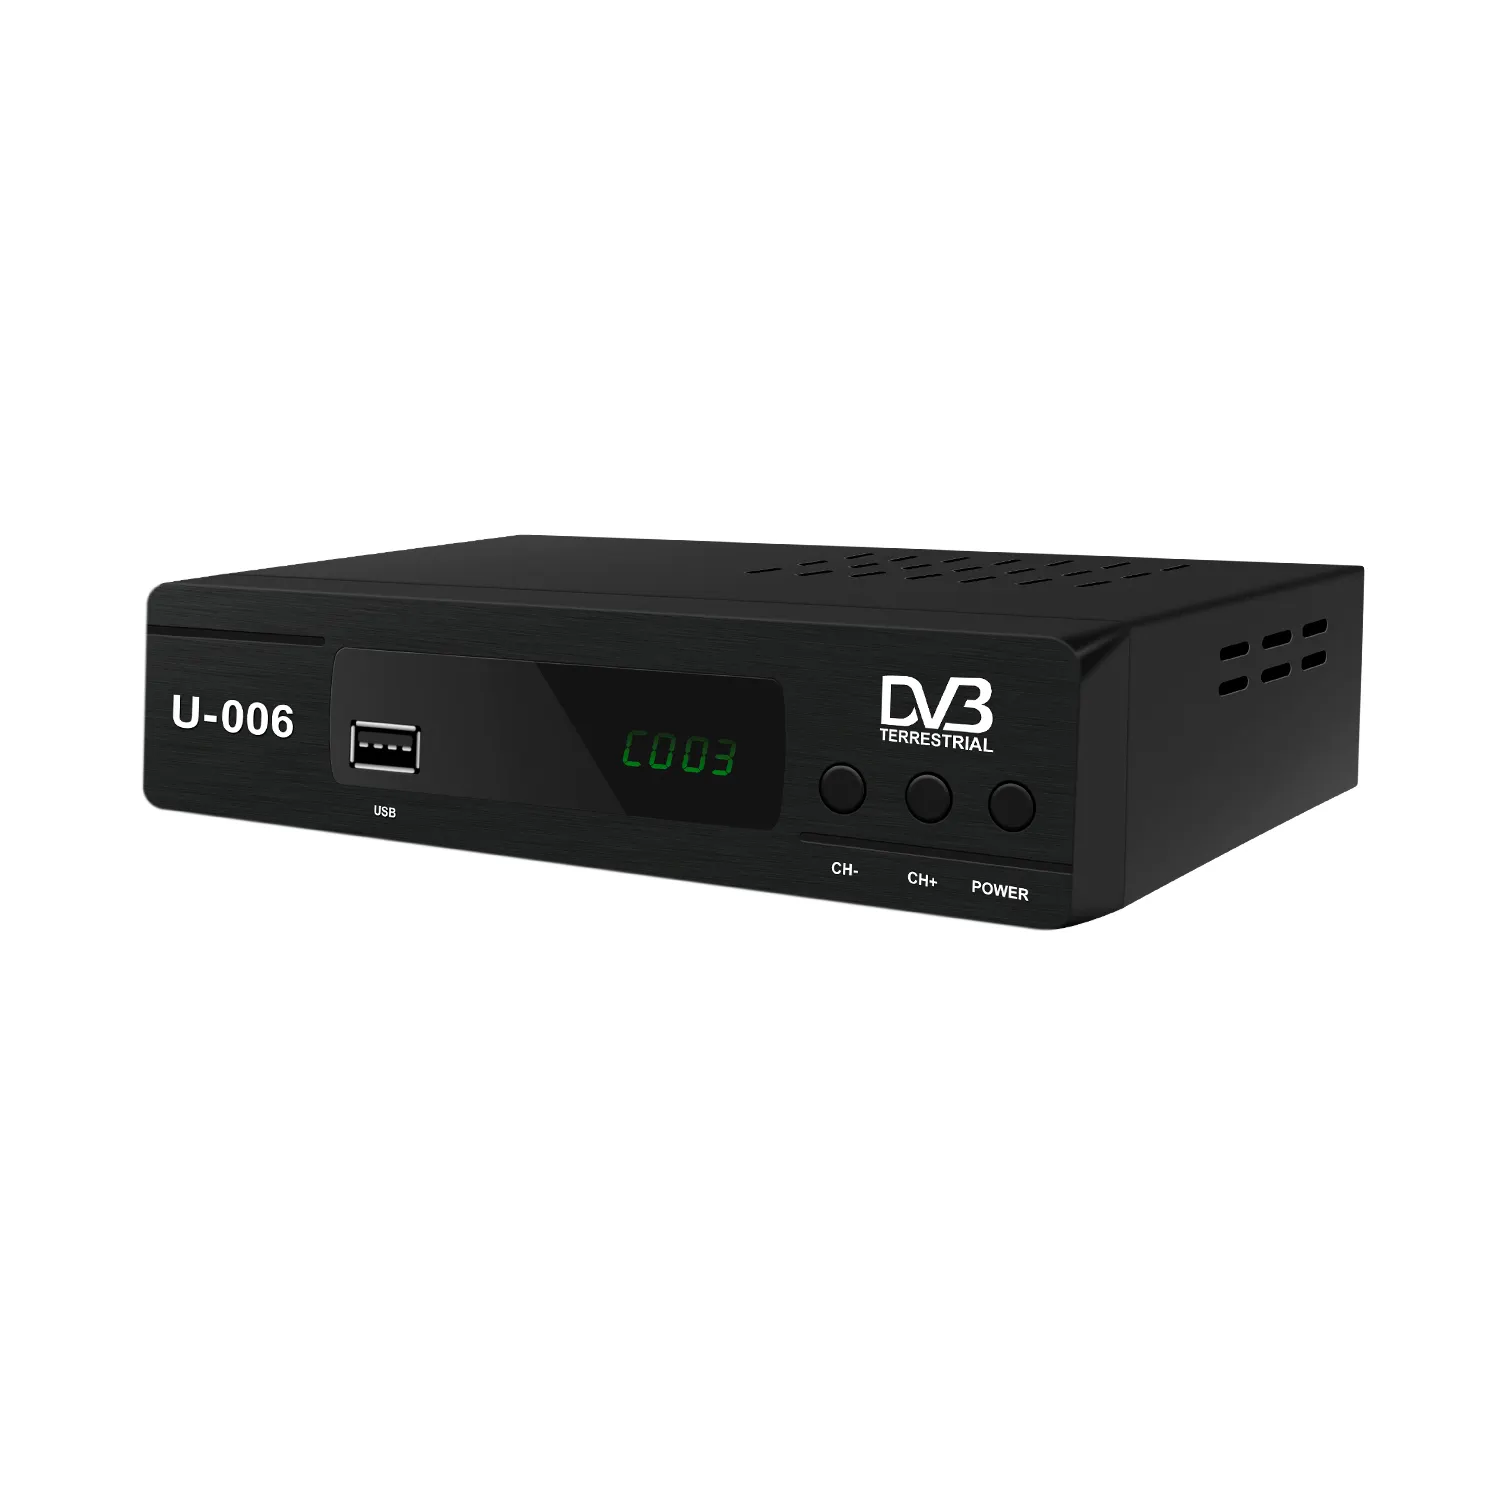 フルHD DVB-T2セットトップボックスWifiメディアプレーヤーデジタルTVレシーバーDecodificadorDVBT2TVボックス